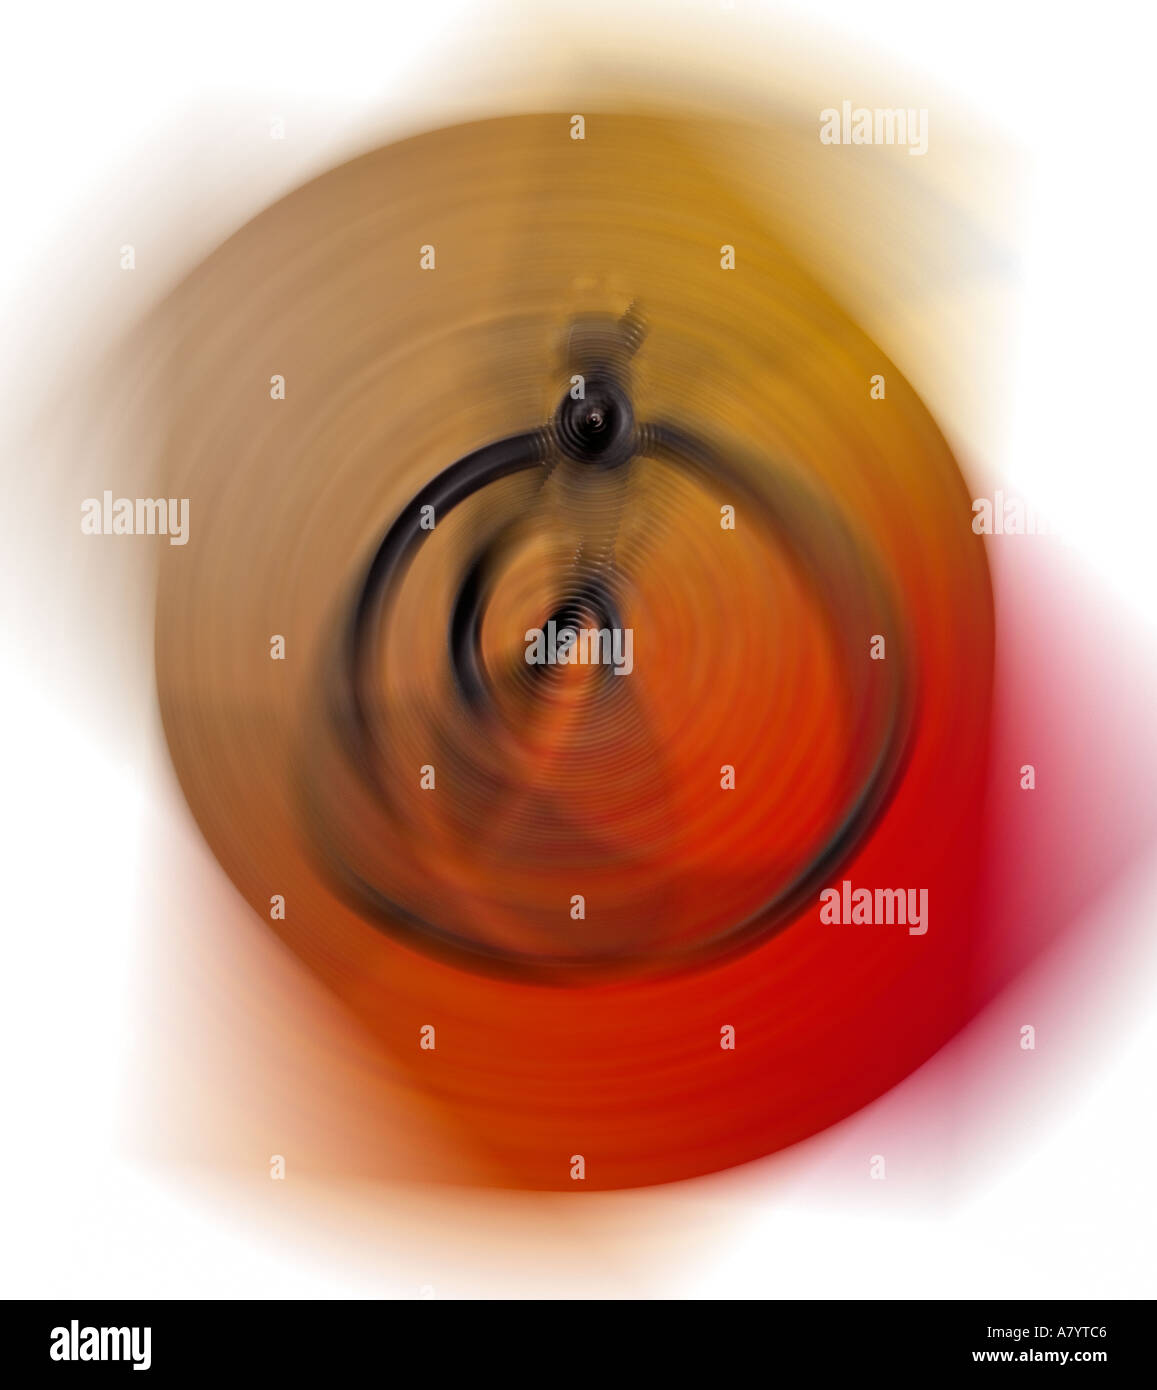 Image conceptuelle de la force centrifuge apparente pivotée à vitesse et se développant vers l'extérieur dans un mouvement circulaire autour d'un point d'axe central fixe. Banque D'Images